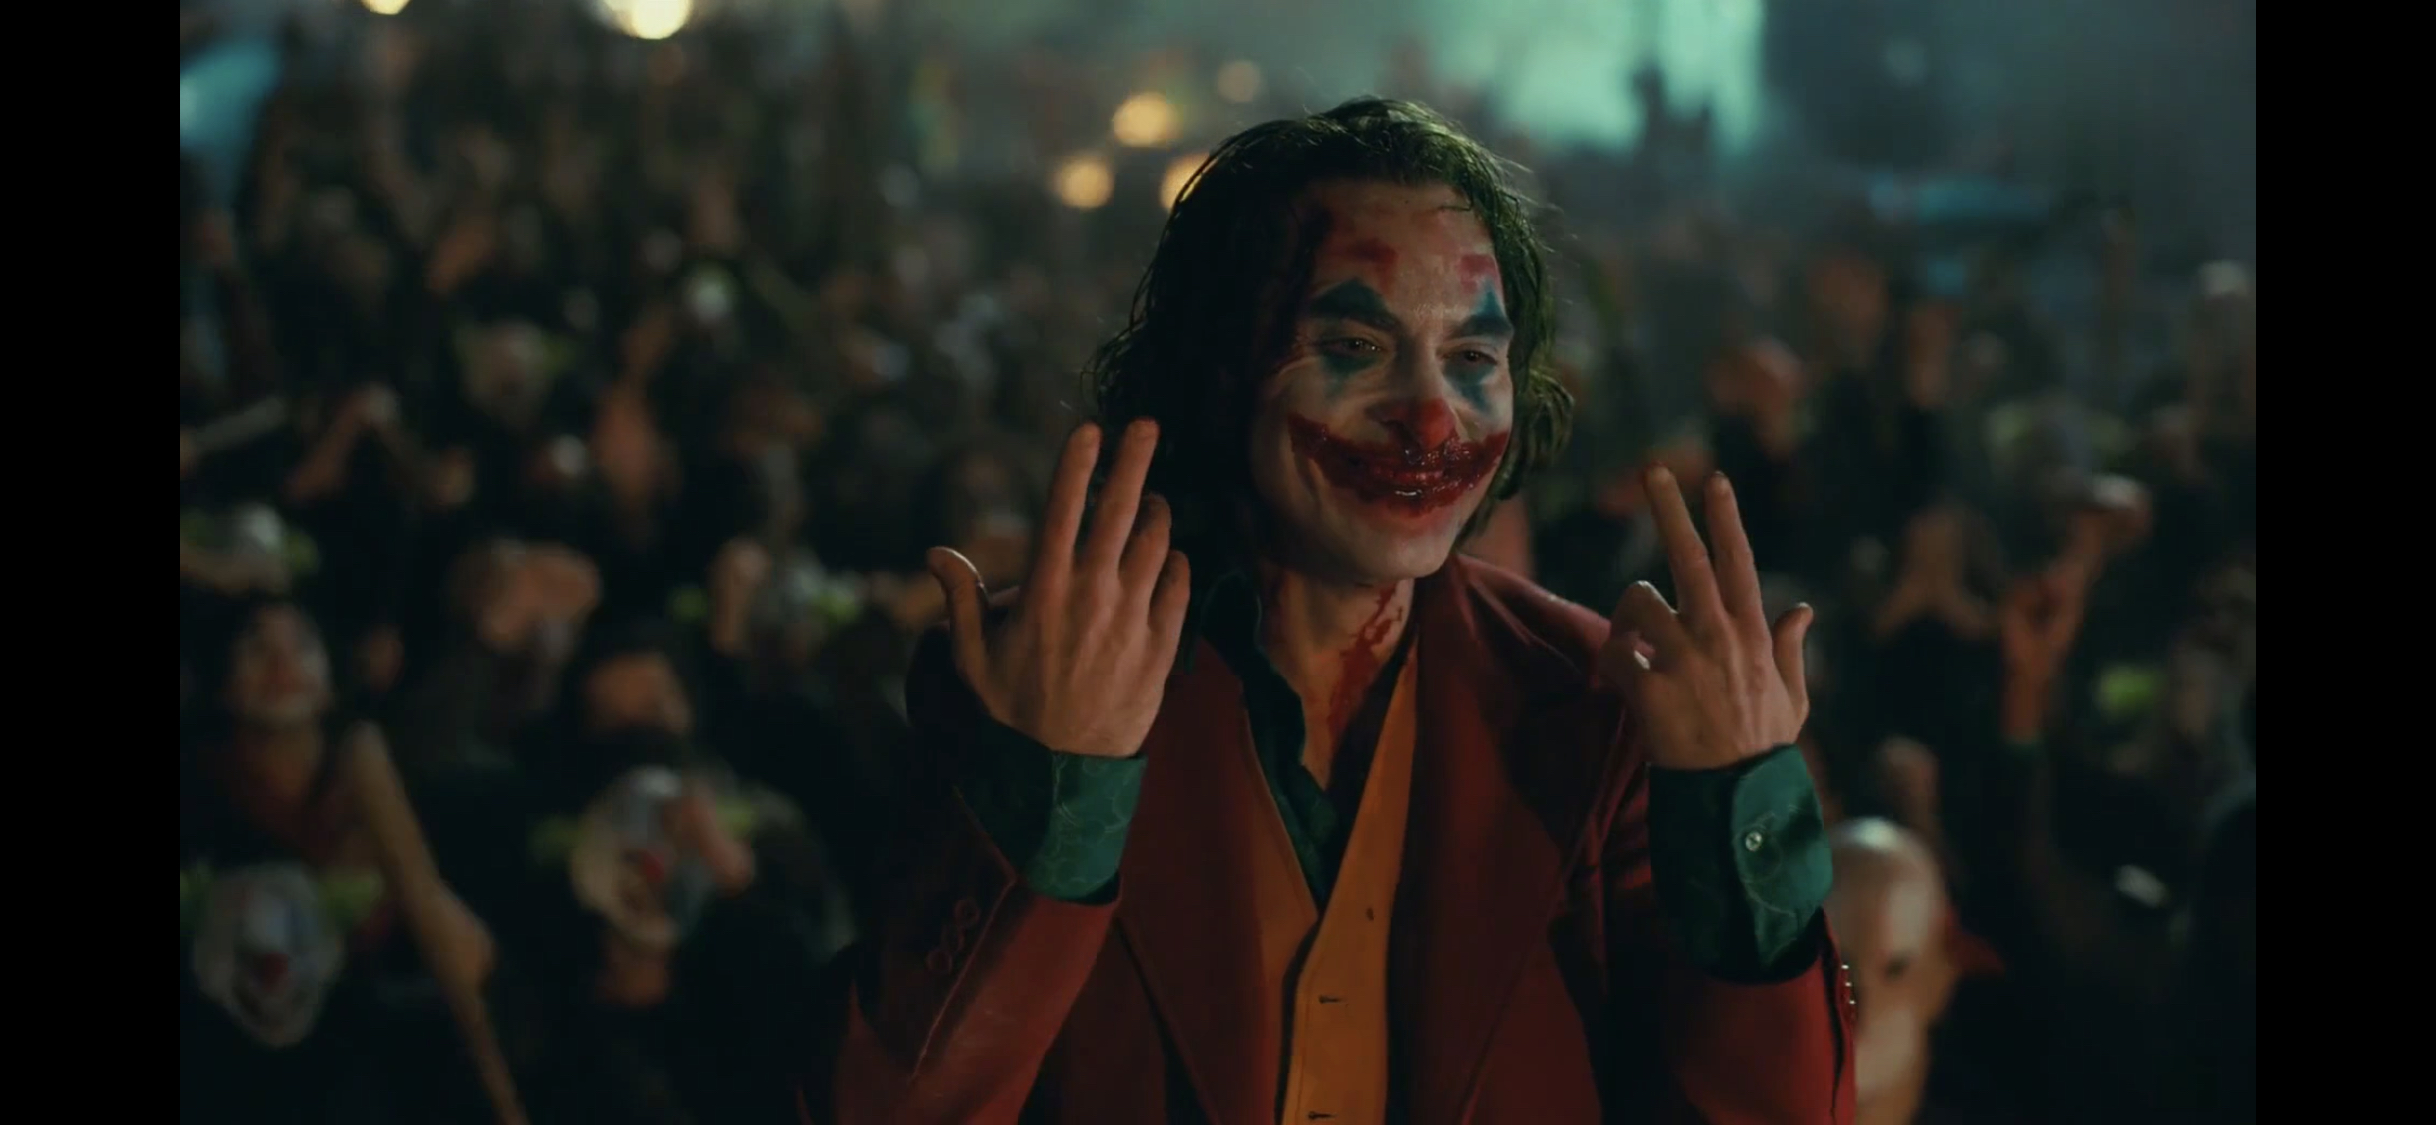 小丑影评 让最痛苦的人制造快乐 ——《joker》 有汁源